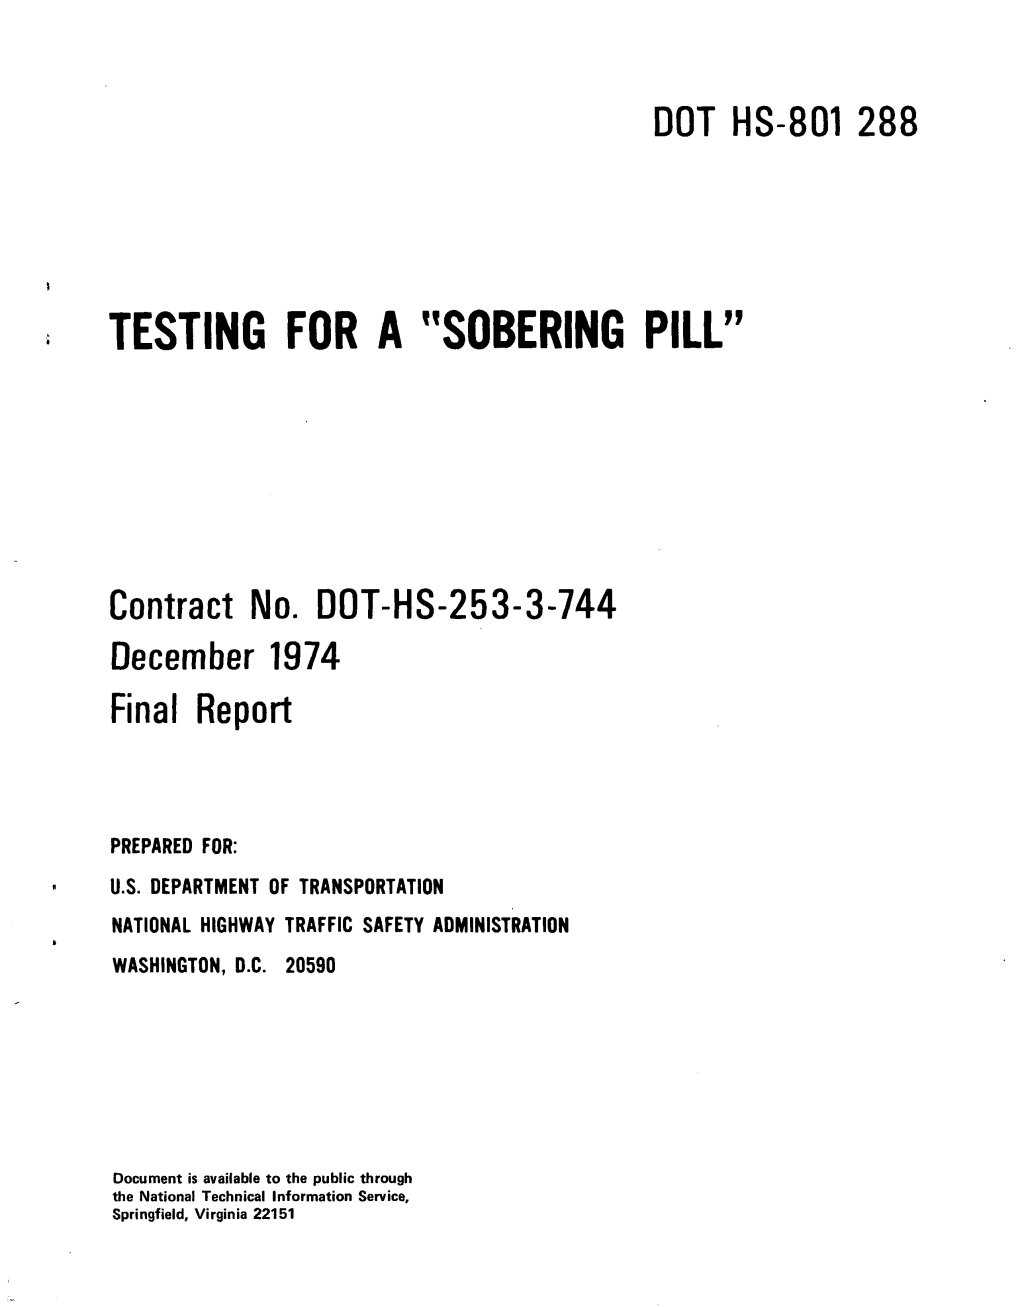 Sobering Pill"